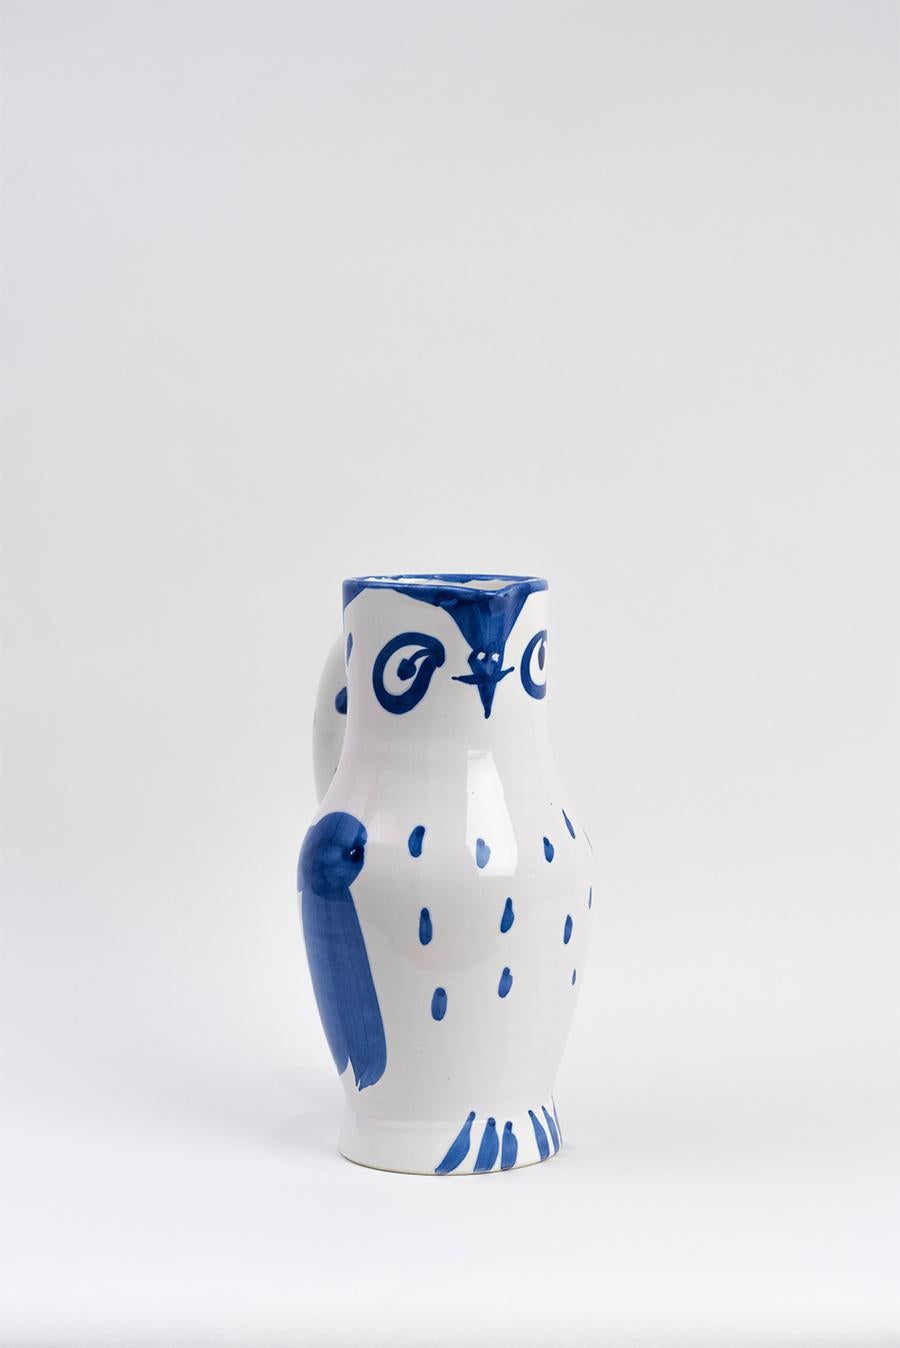 Pablo Picasso - Madoura Ceramic: Owl (Hibou) 1954